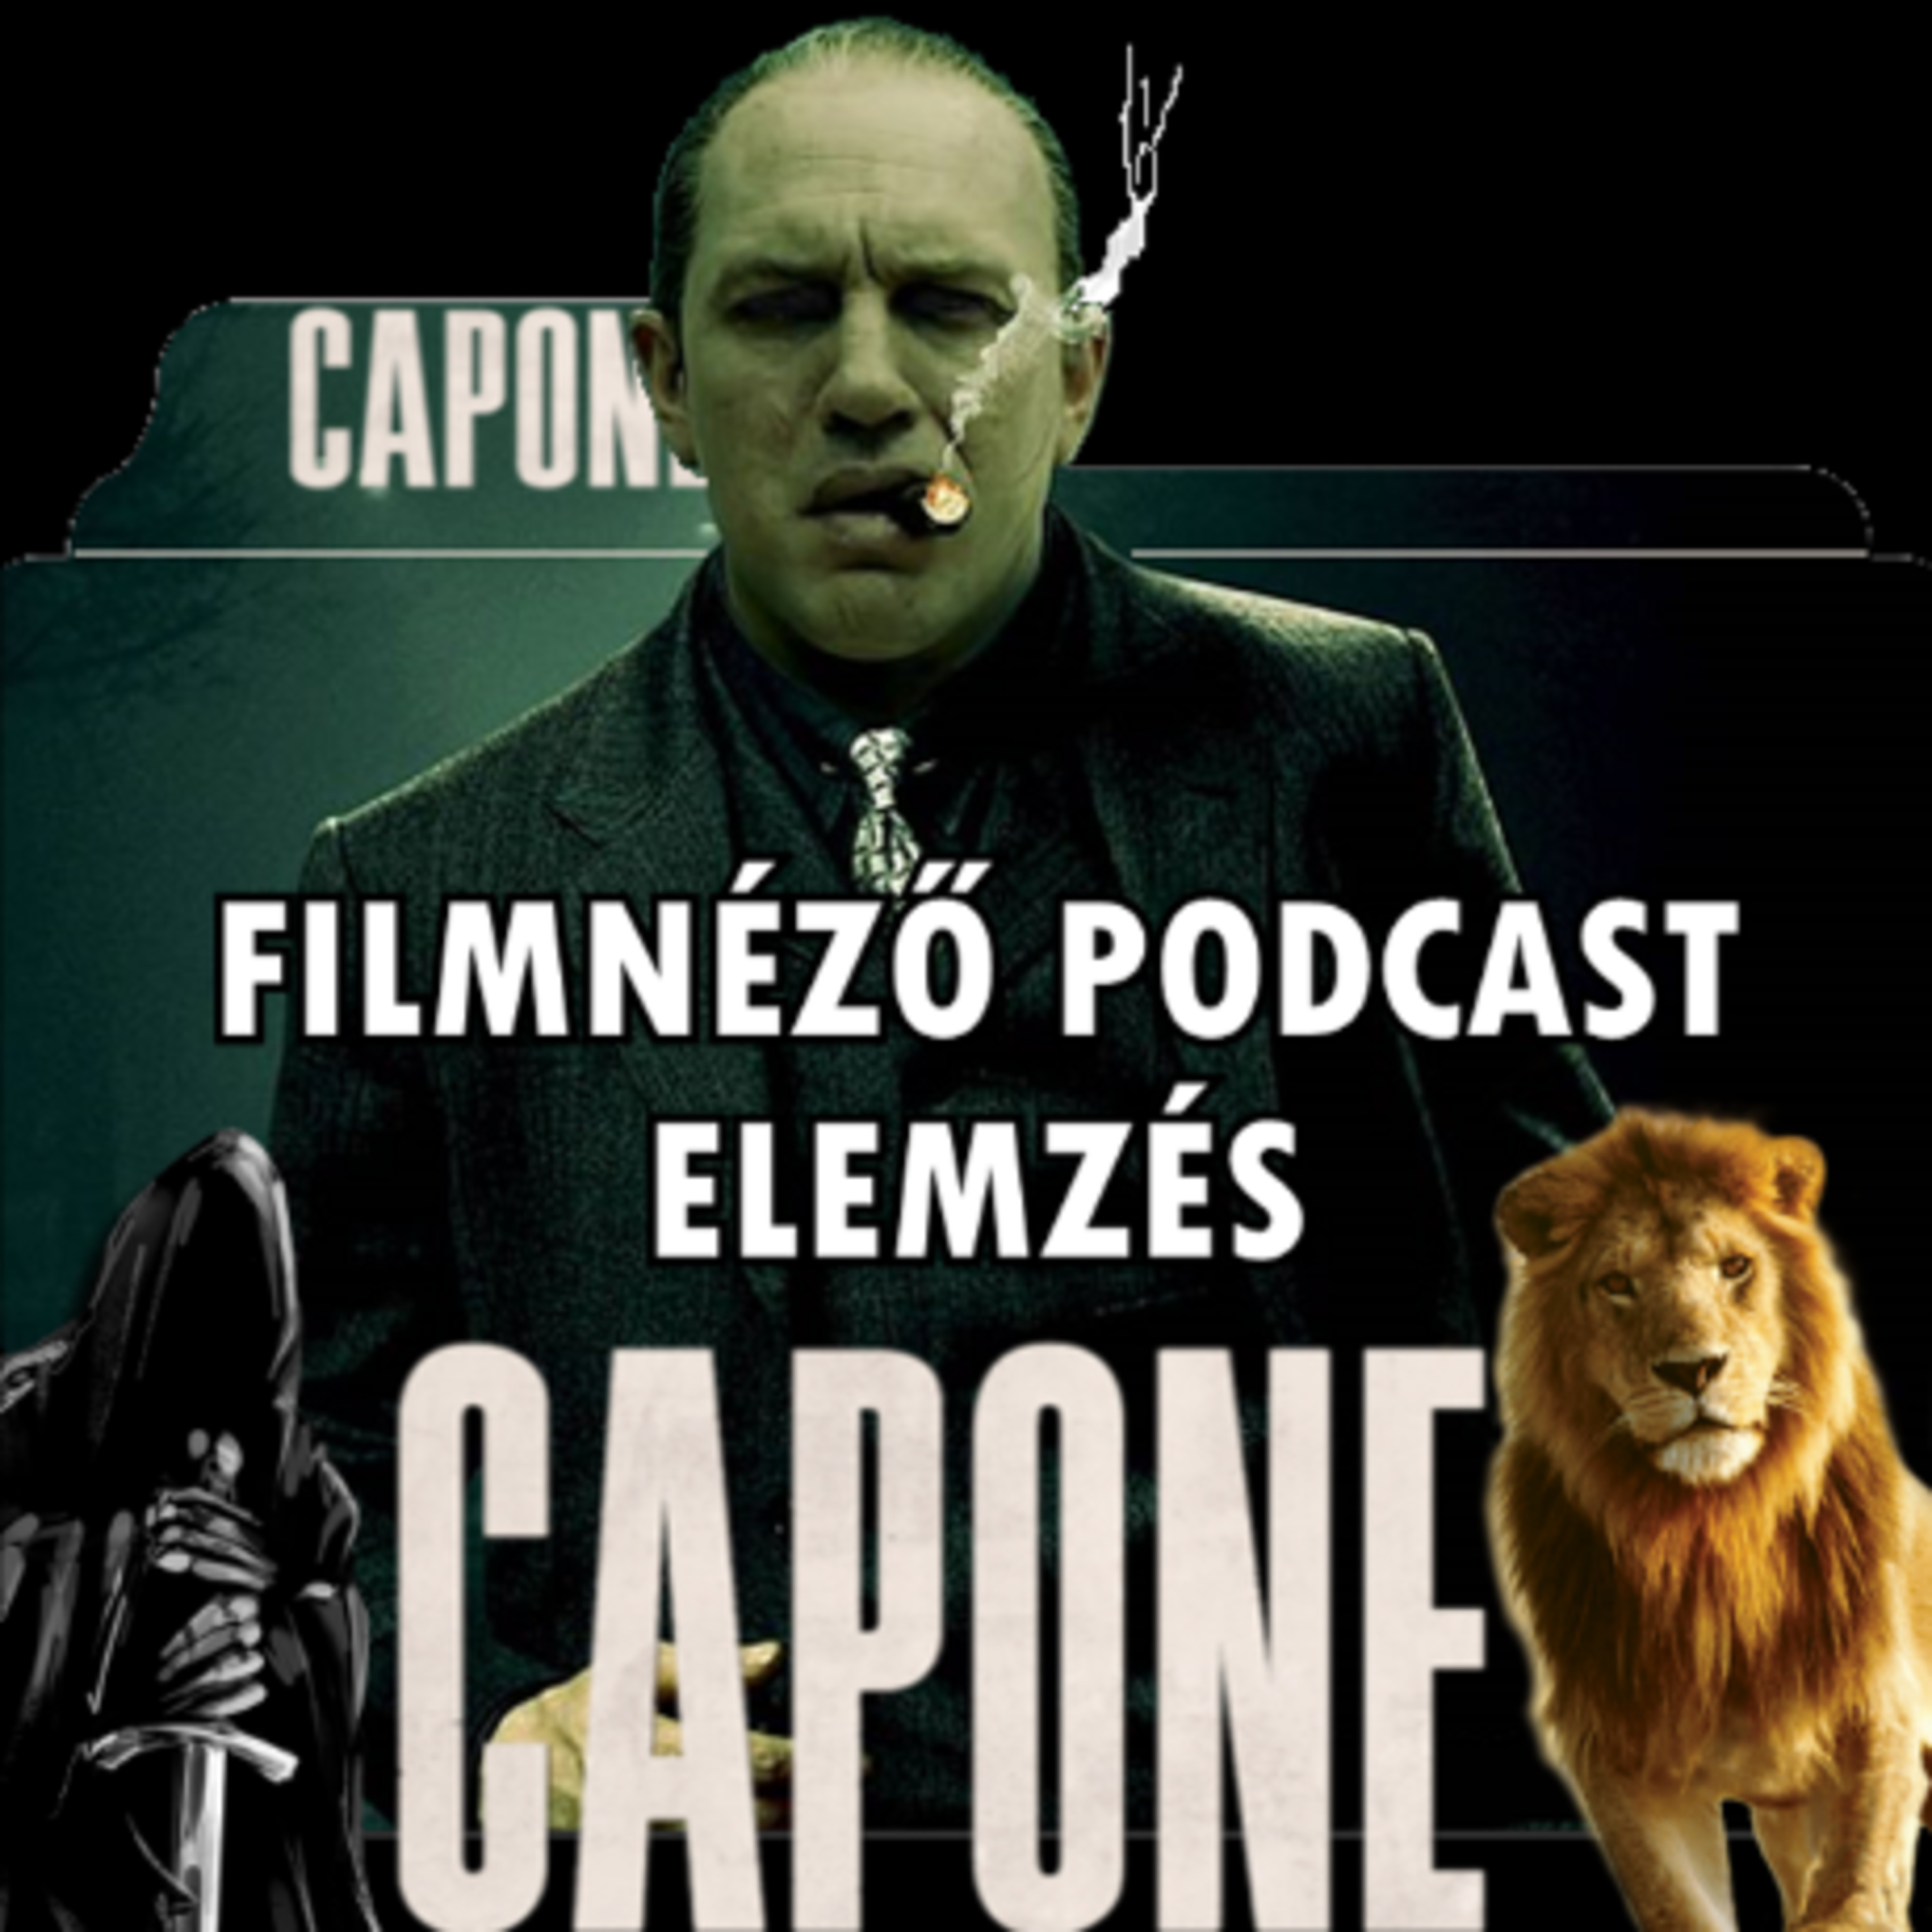 #72 Capone